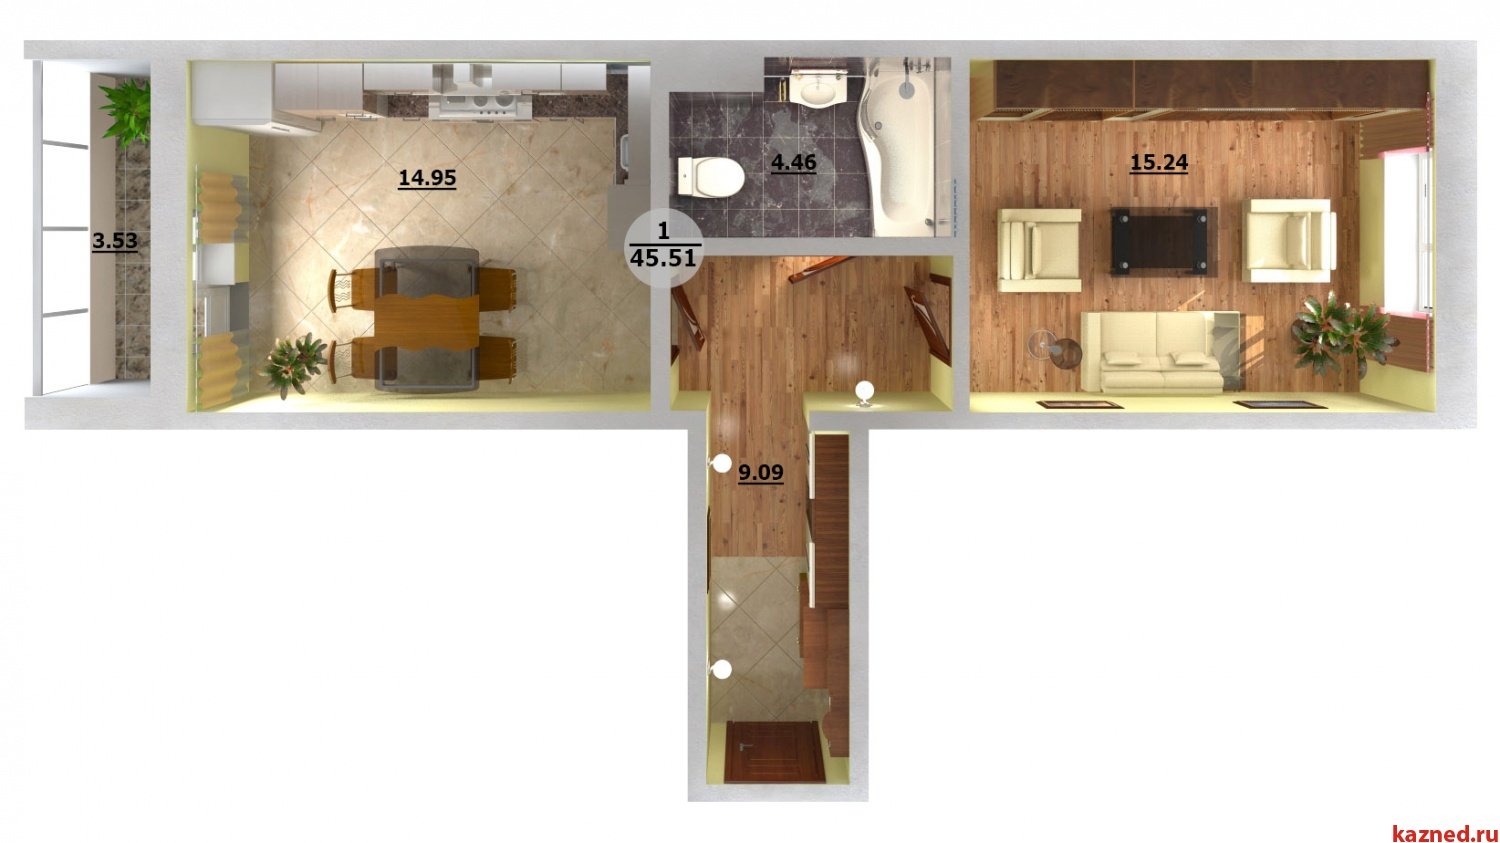 Дизайн интерьера квартиры распашонки